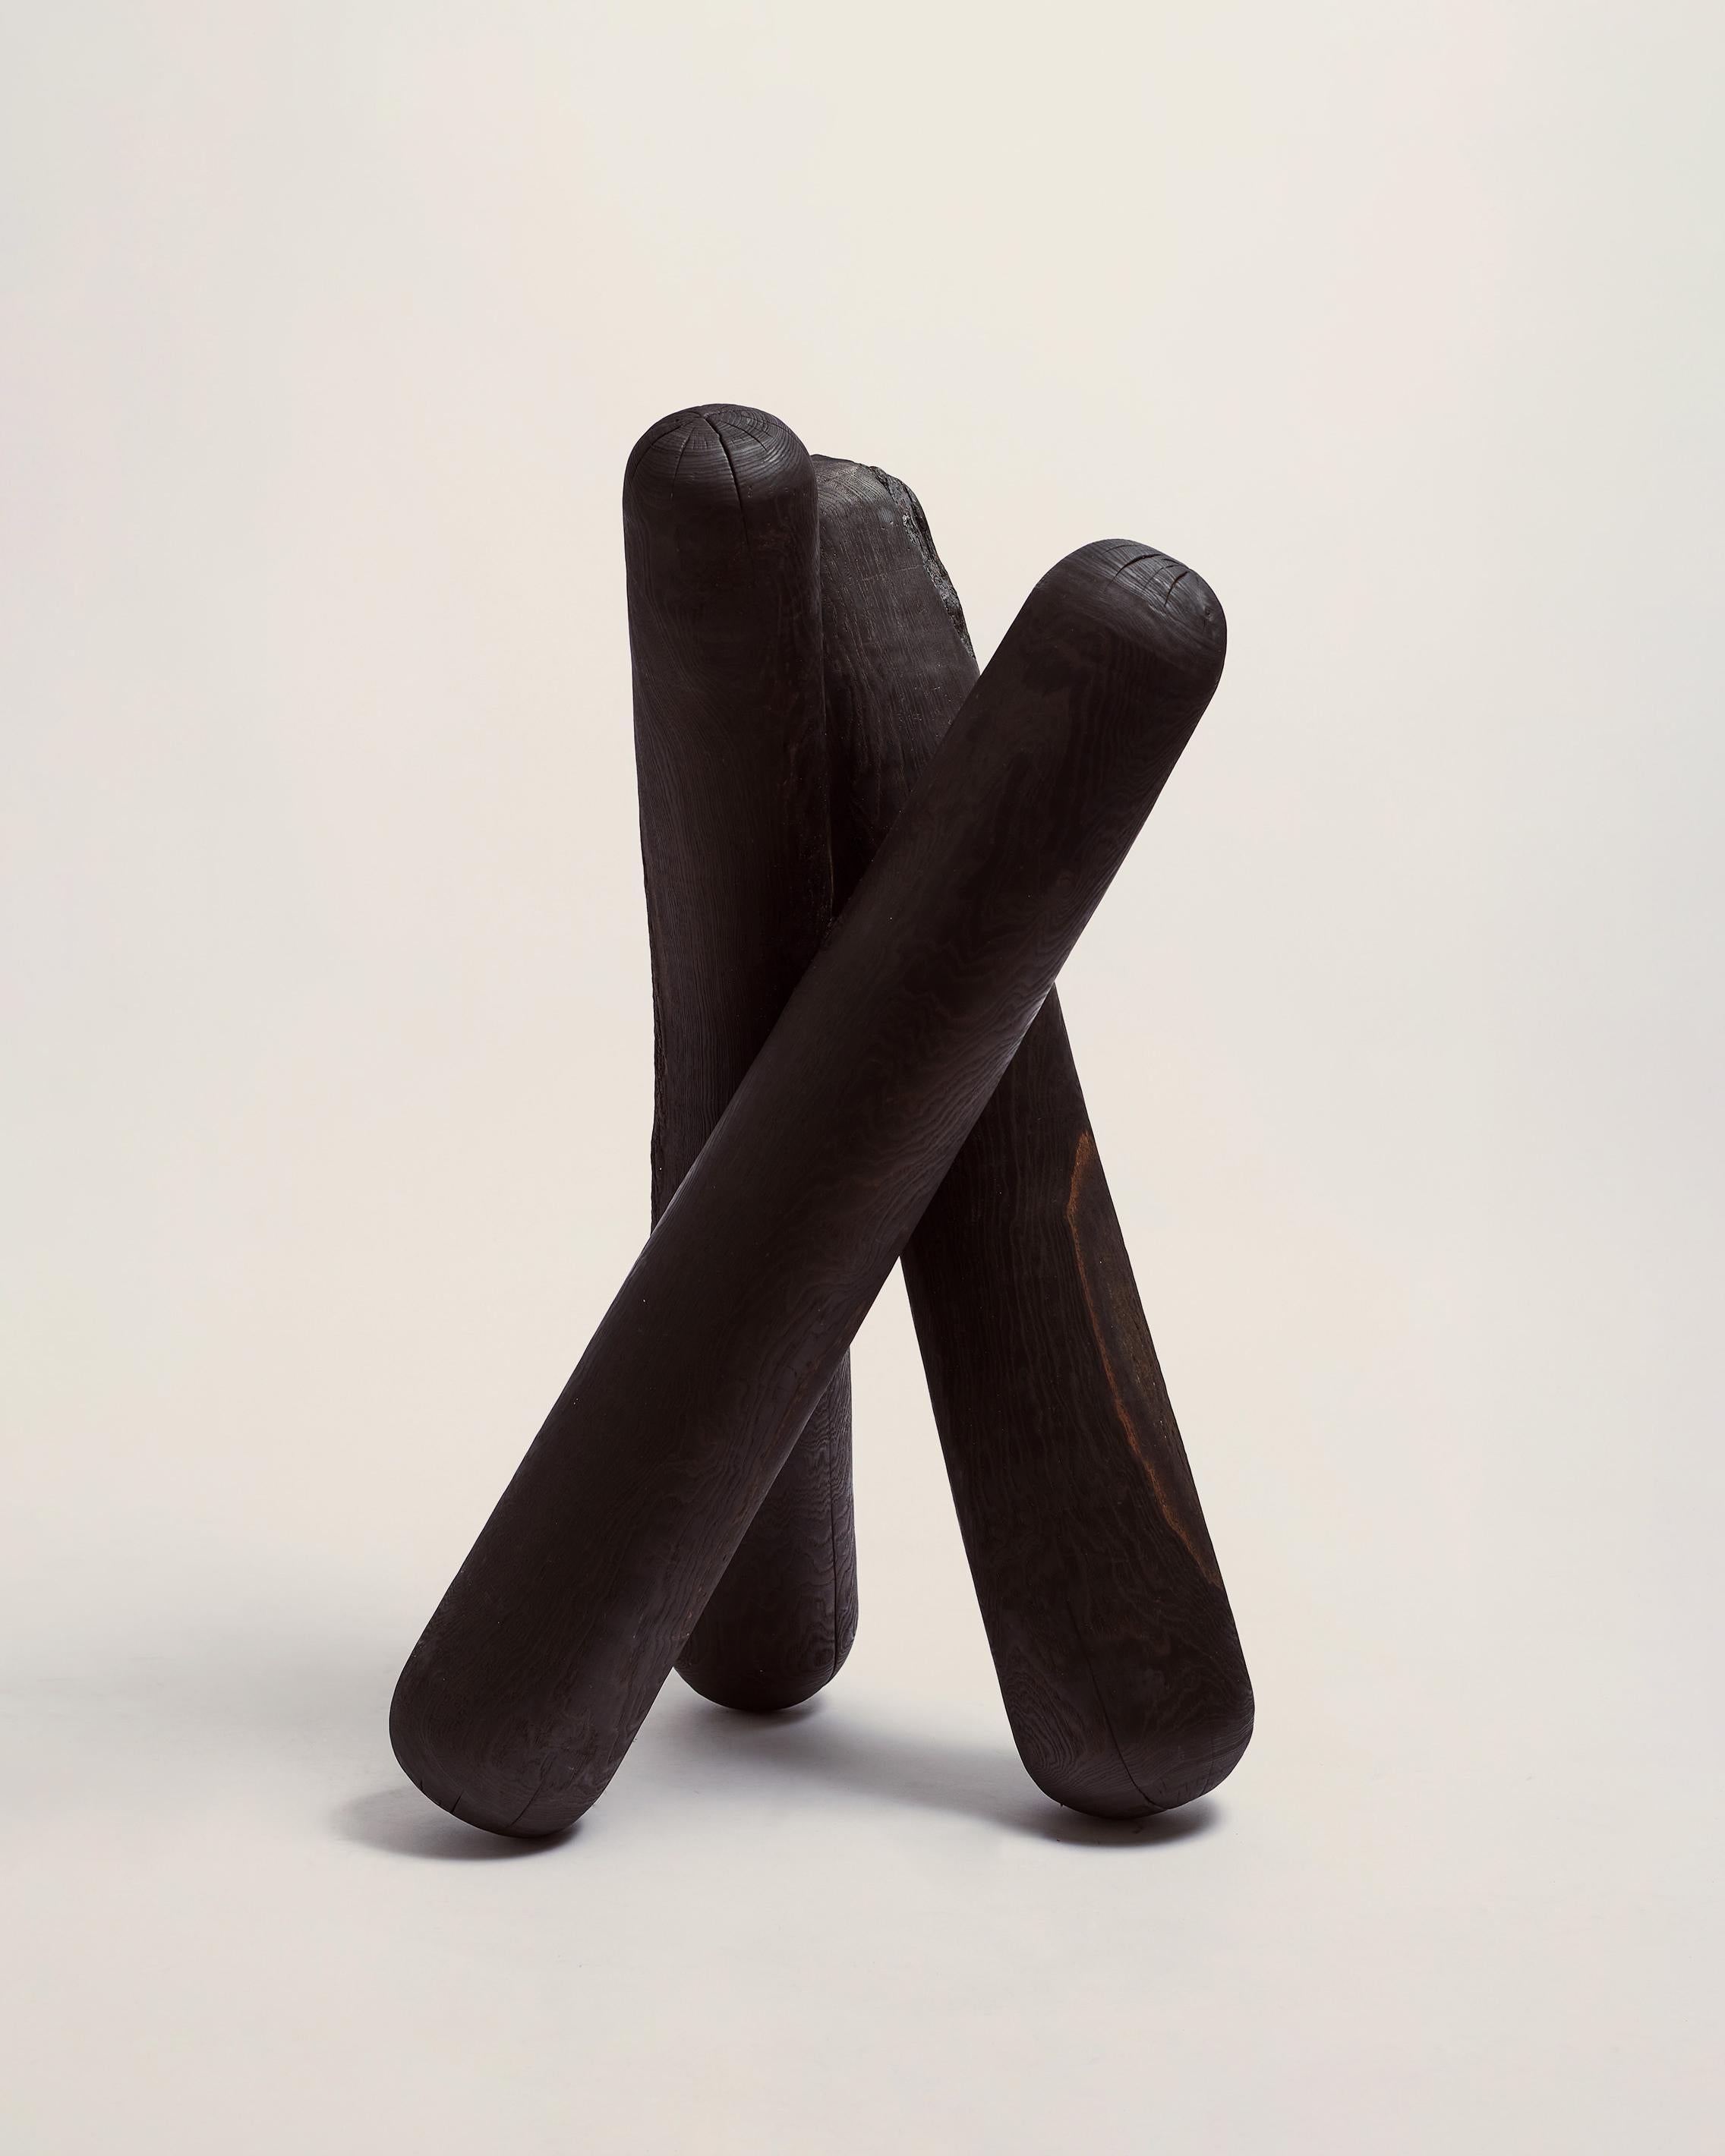 Abstract Sculpture Hugo Mahieu - Grande sculpture en bois brulé - sculpture géométrique en bois brûlé